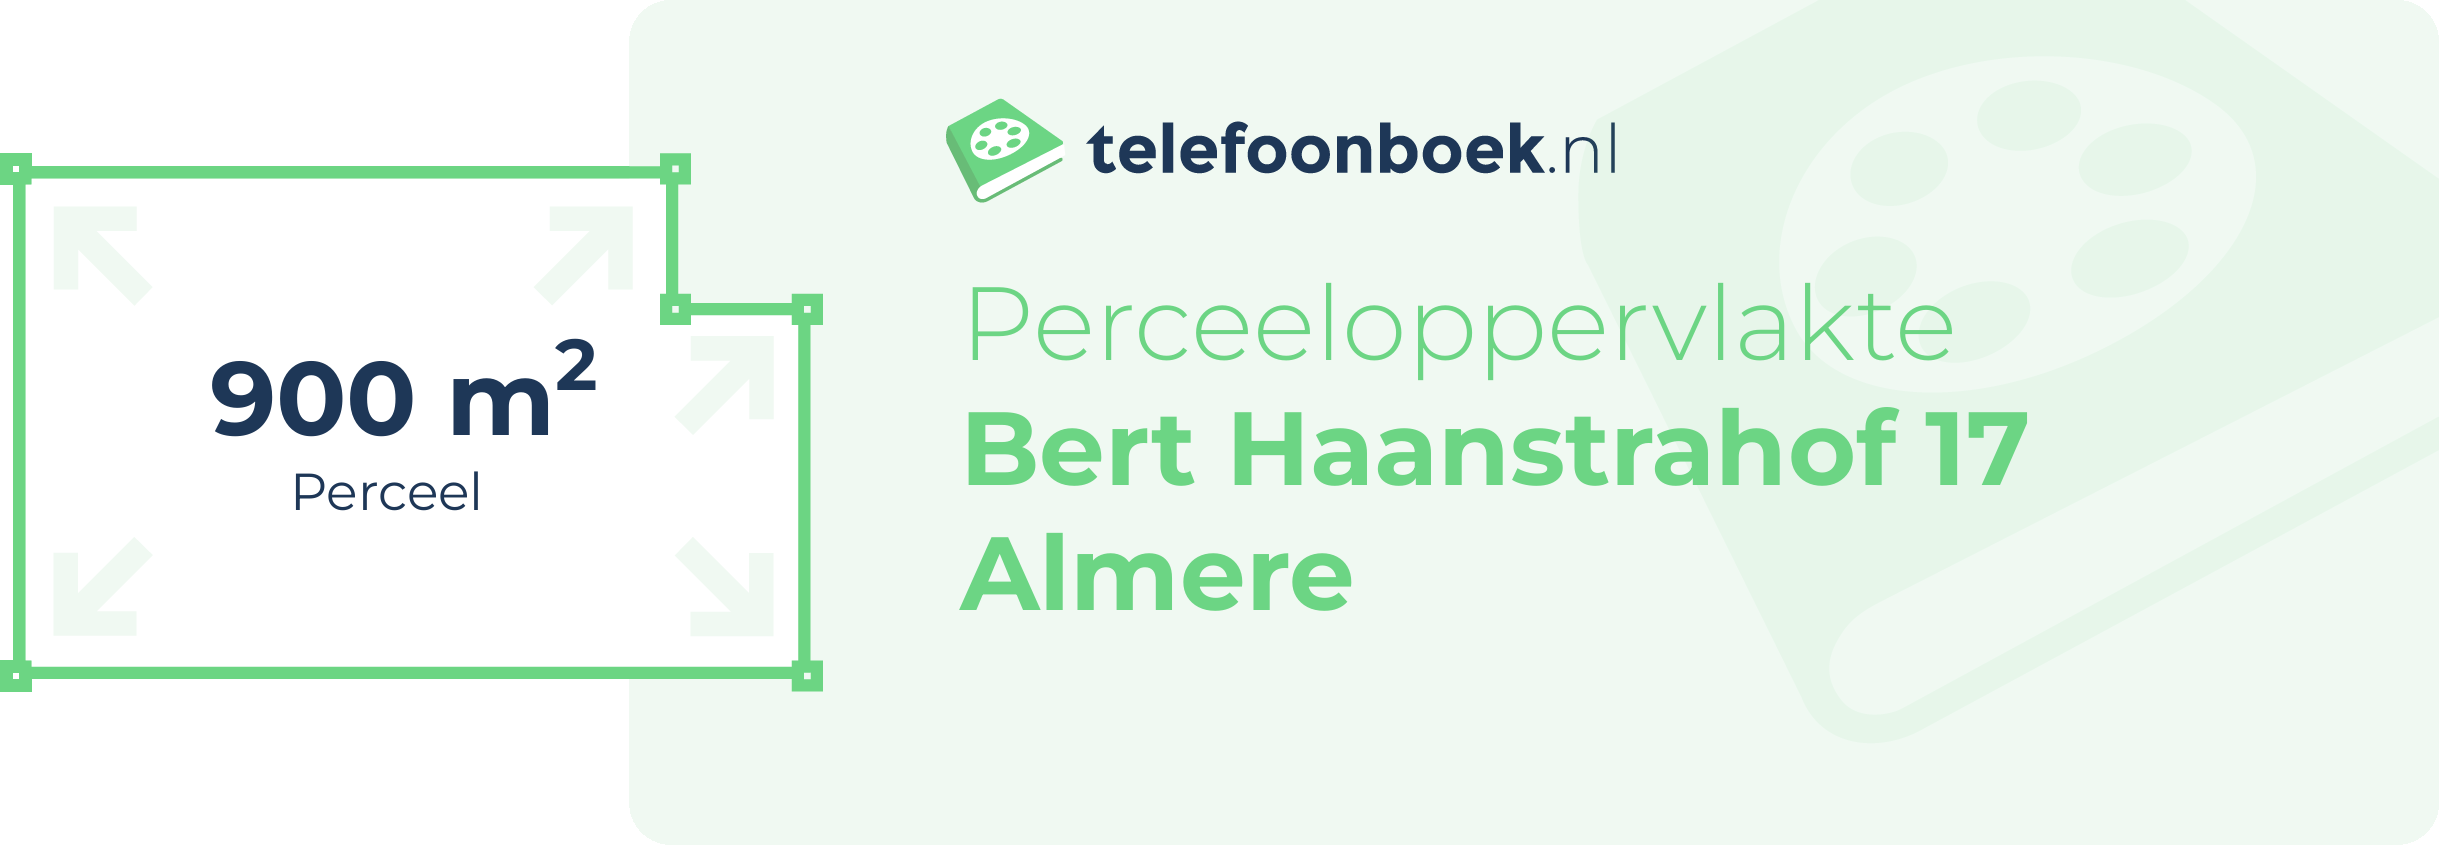 Perceeloppervlakte Bert Haanstrahof 17 Almere